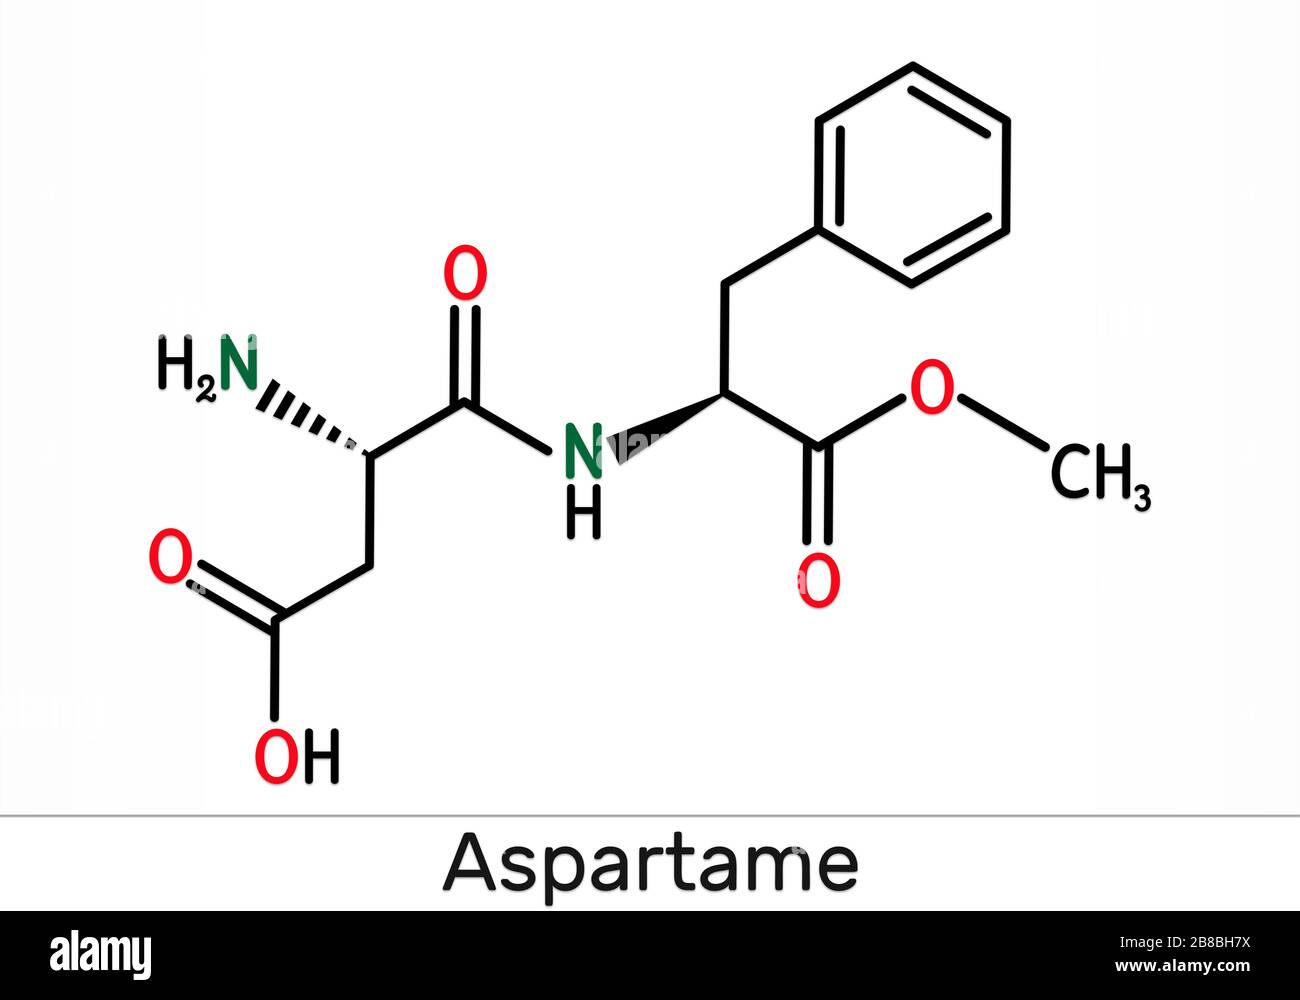 Aspartamo, APM, molécula. Sustituto del azúcar y E951. Fórmula química esquelética. Ilustración Foto de stock